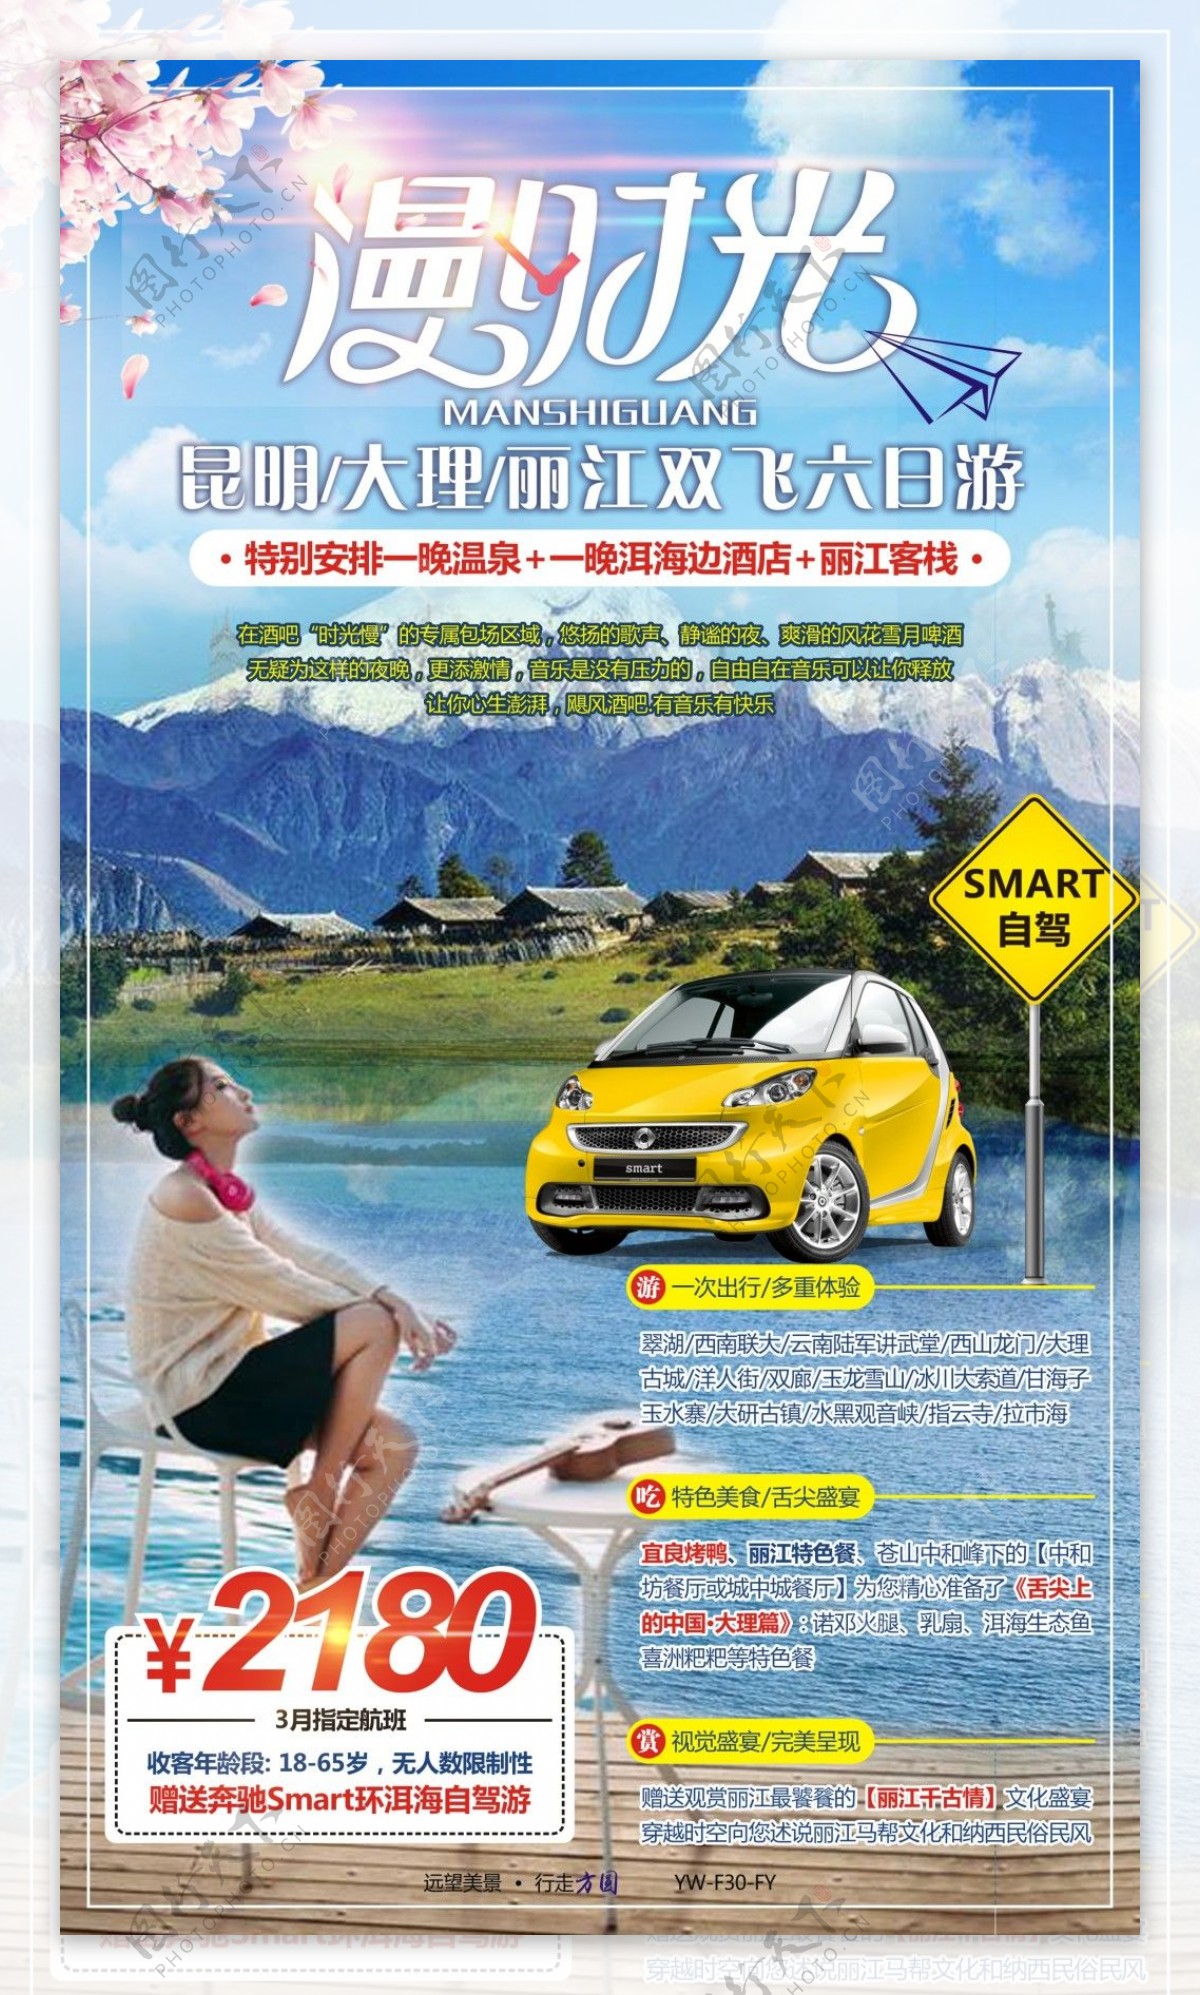 漫时光云南旅游广告宣传图